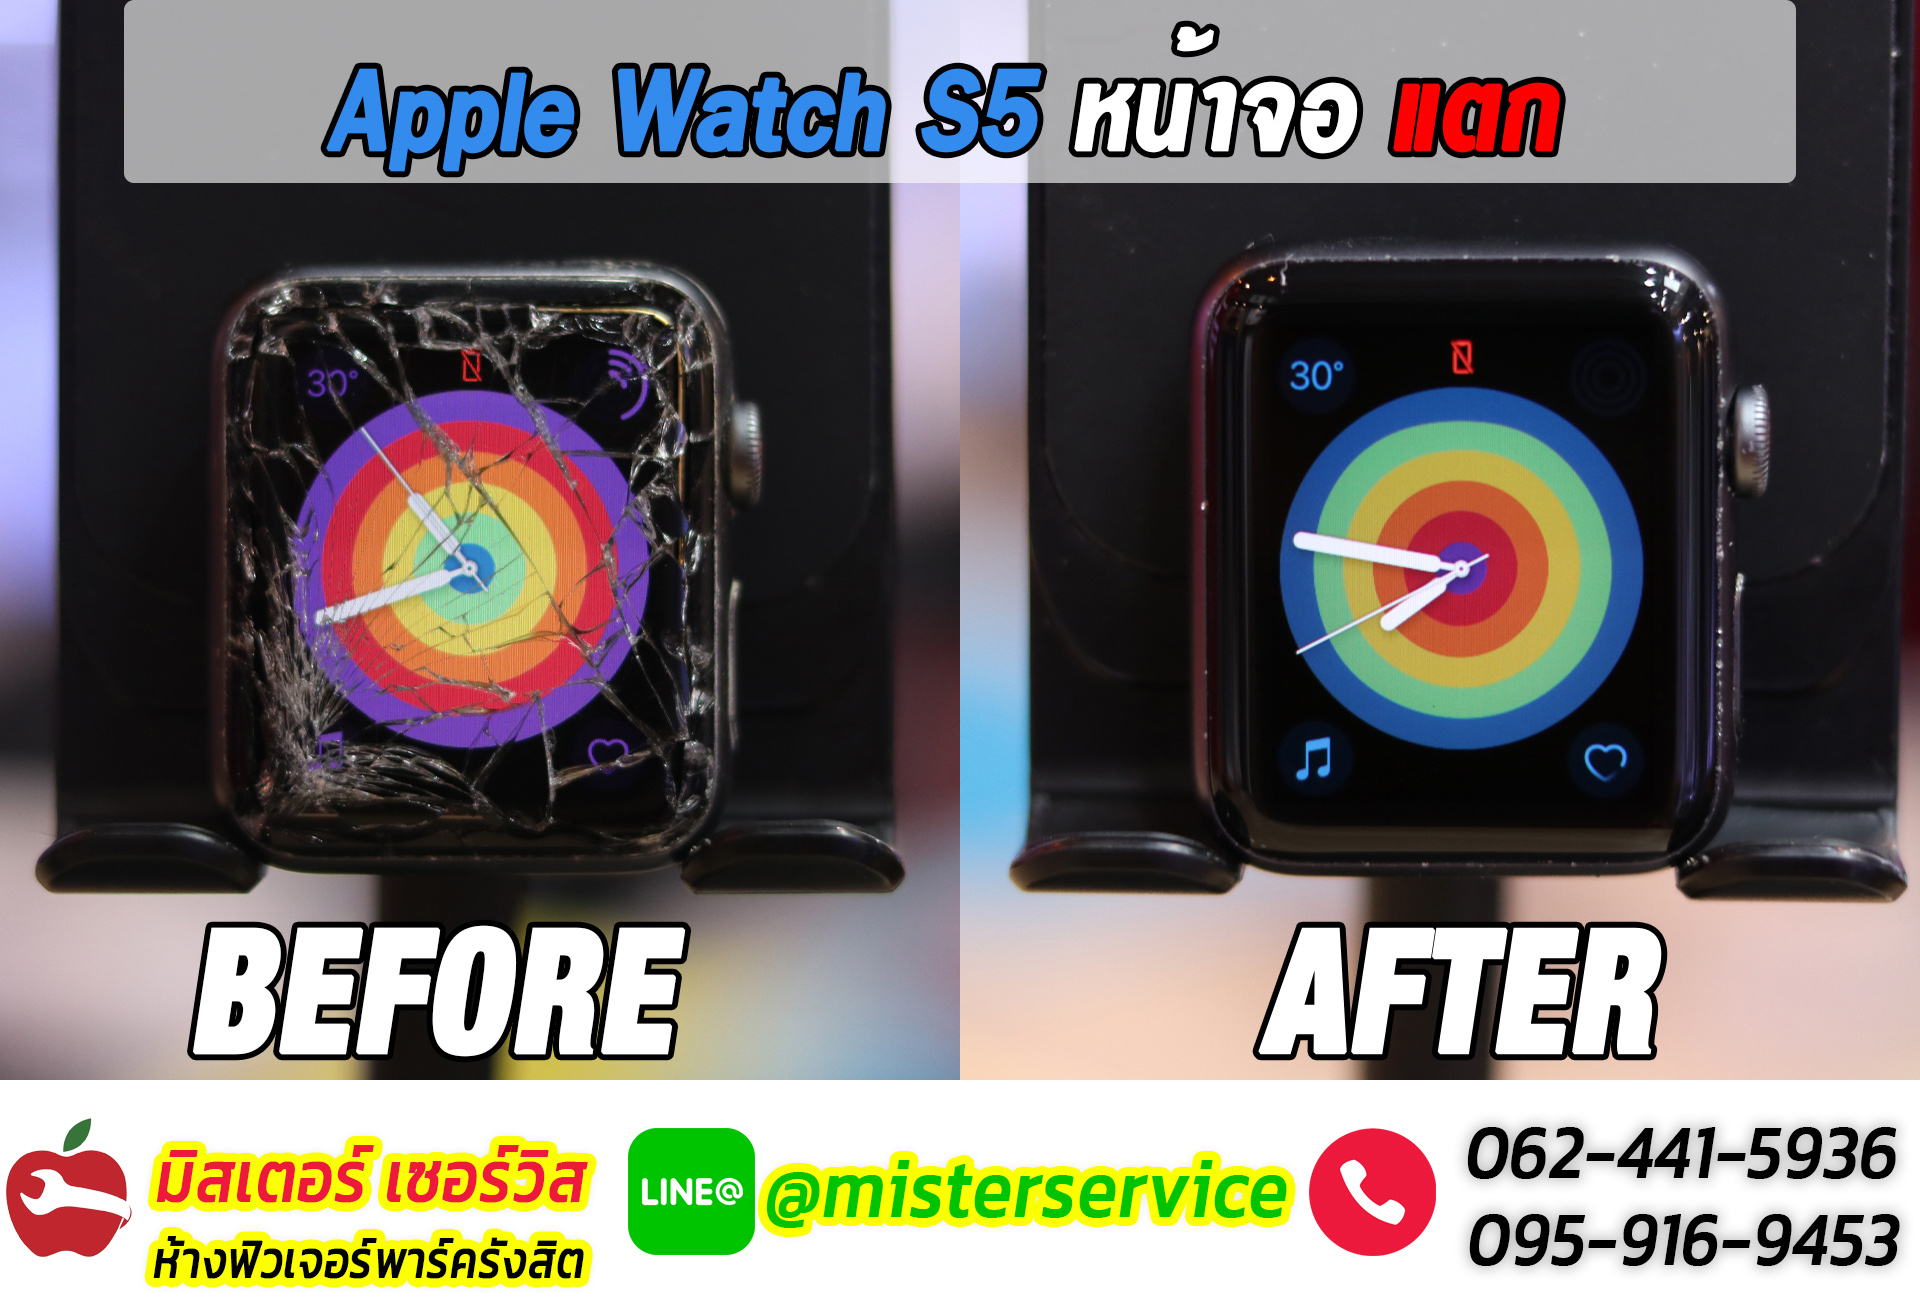 ซ่อม Apple Watch จันทรบุรี ตราด